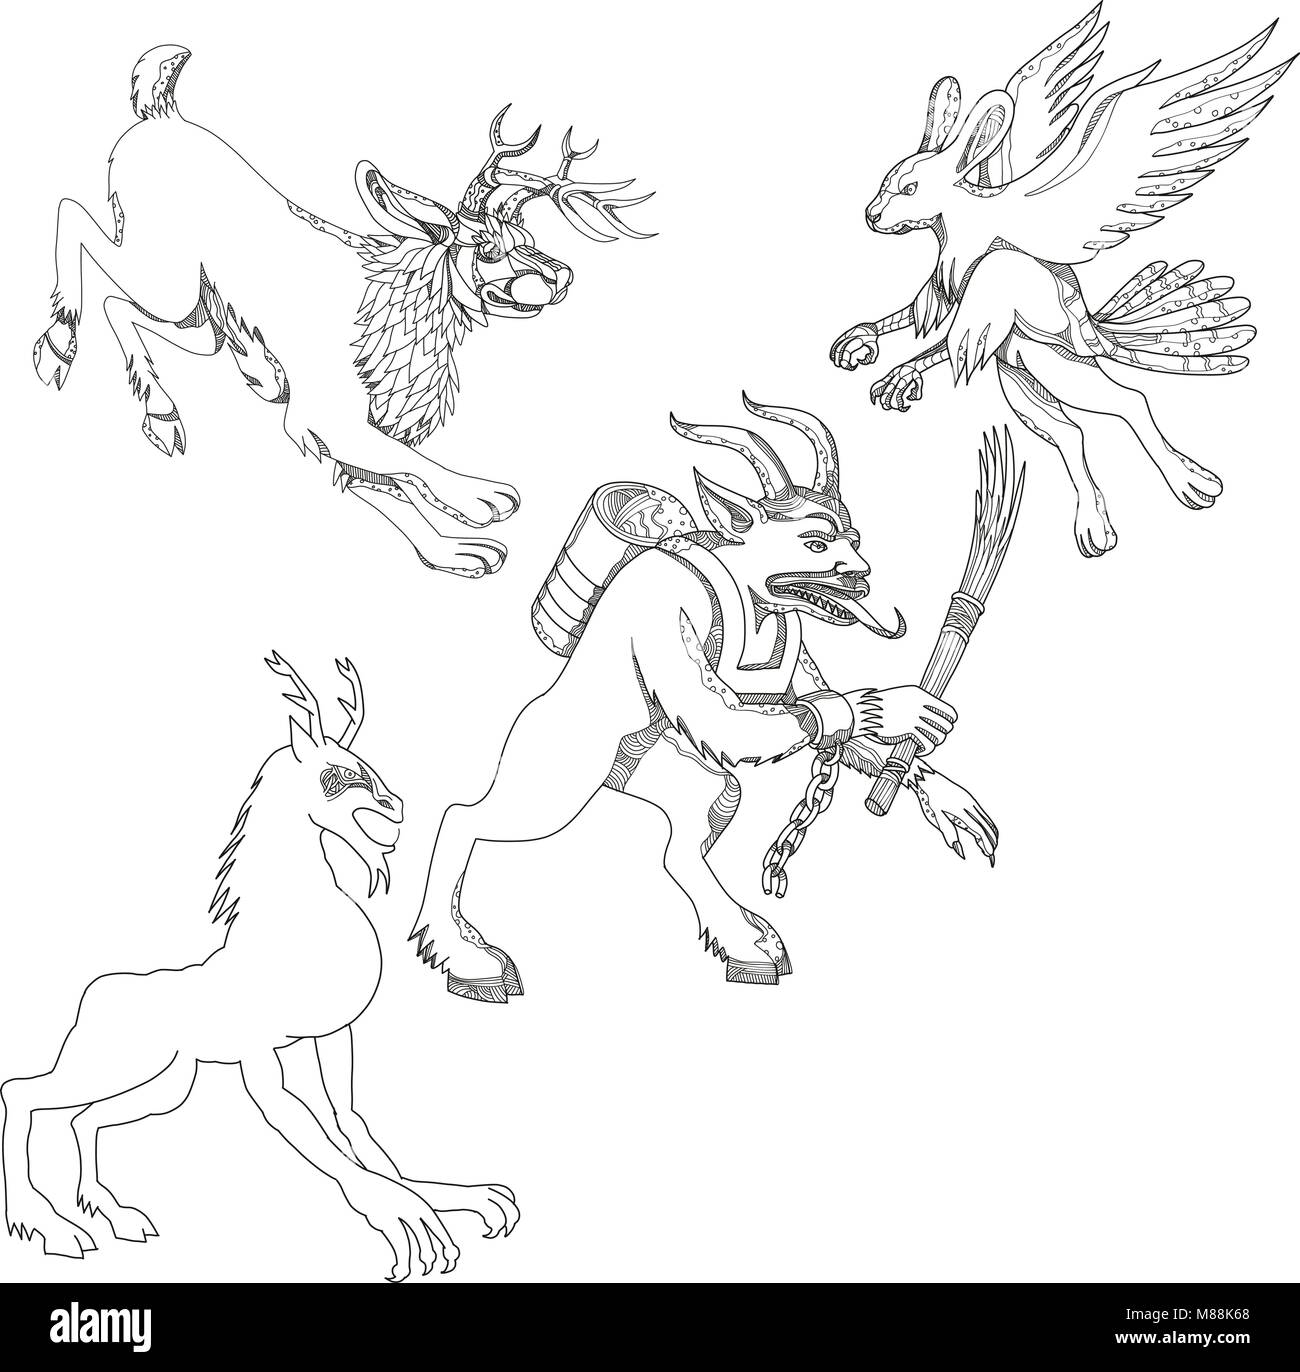 Eine Sammlung von Doodle kunst Illustrationen, umfasst die folgenden Fabelwesen aus Legende Folklore; Jackalope, krampus, skraver, wendigo und Stock Vektor